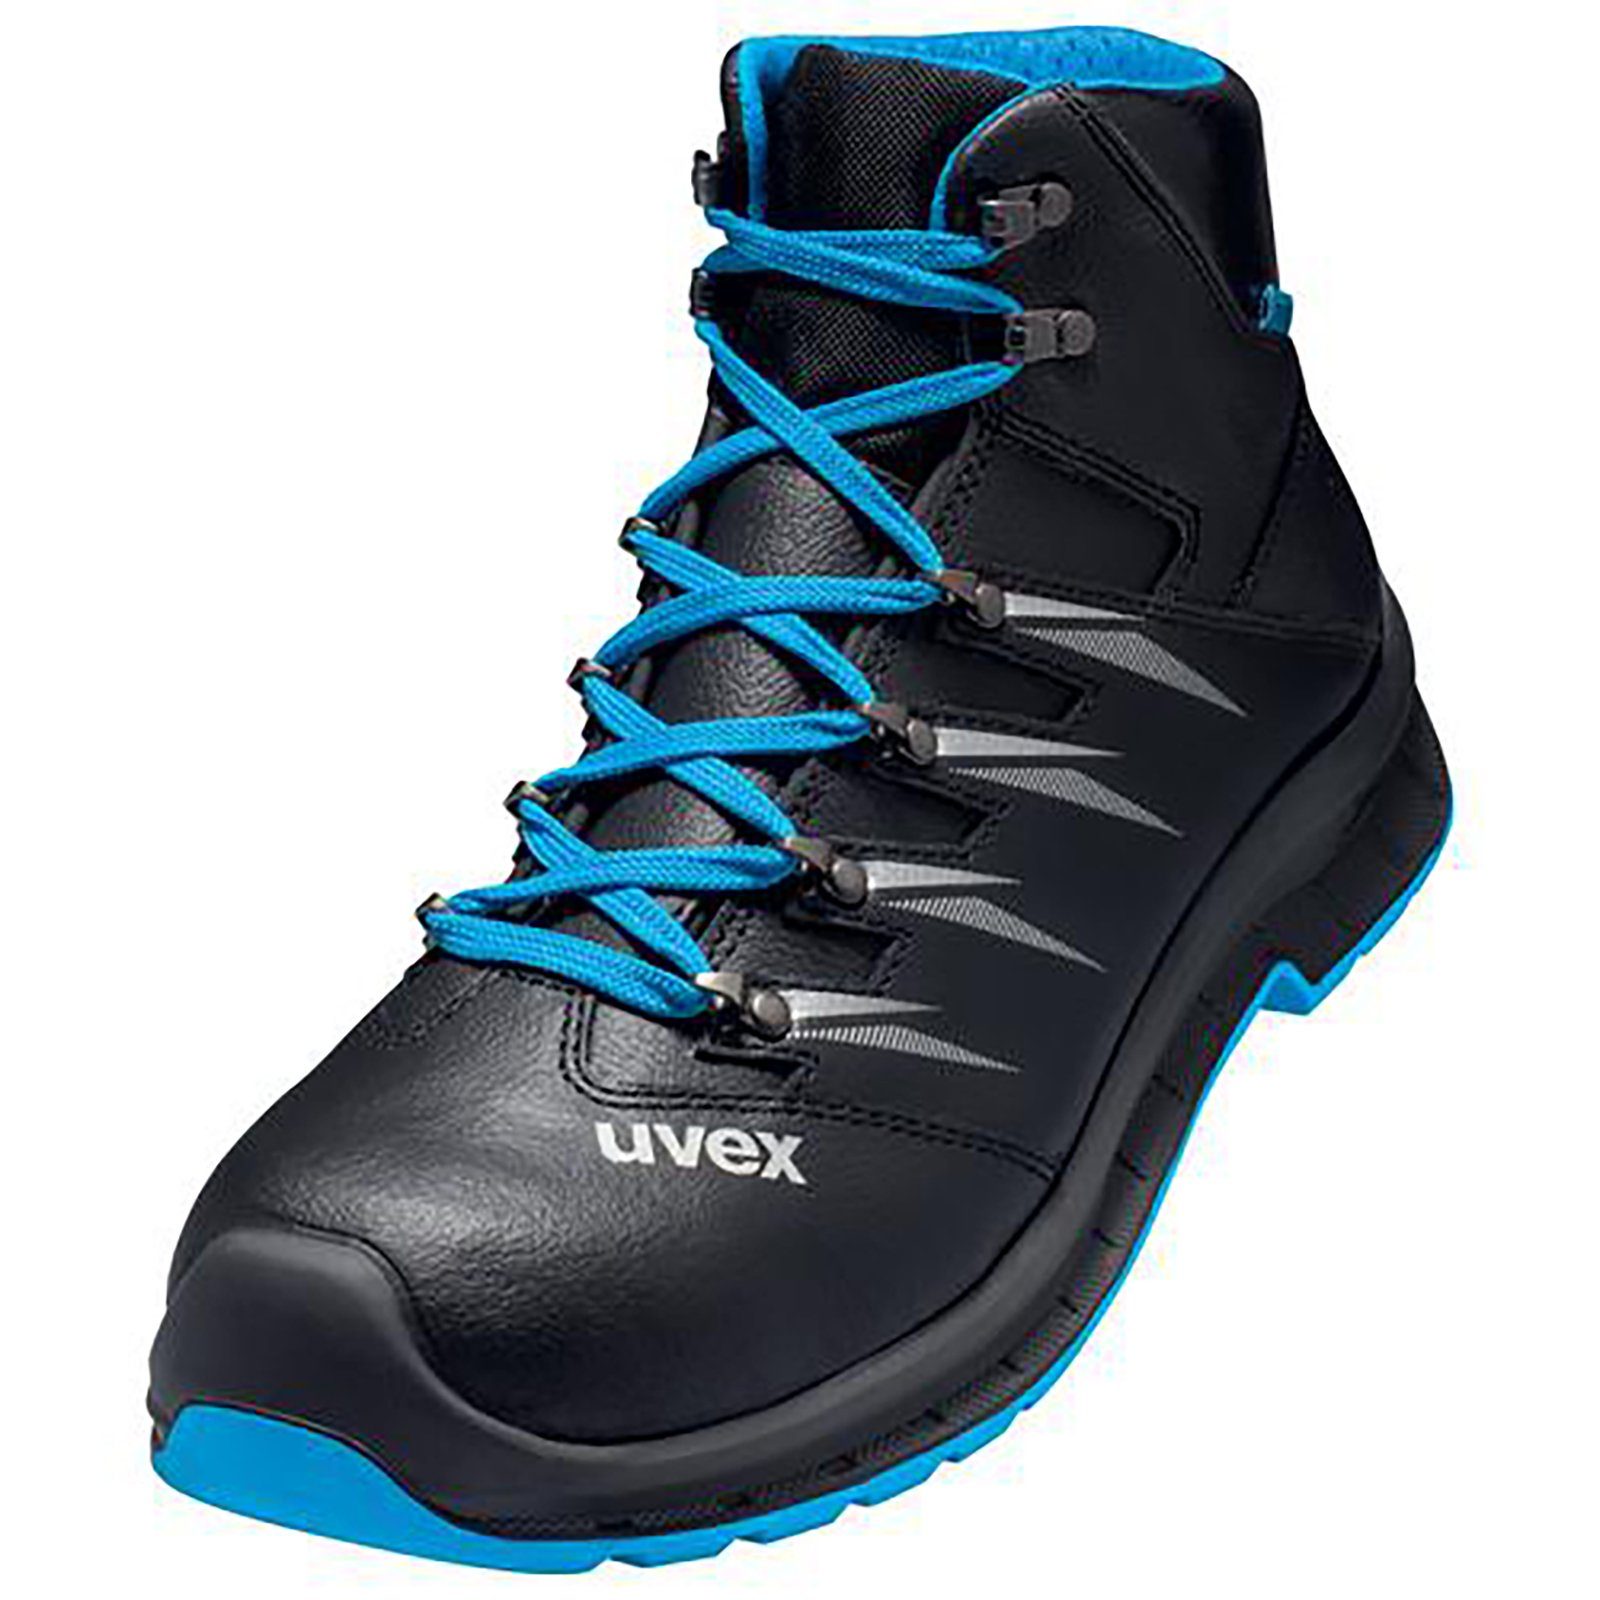 Uvex 2 trend Stiefel S3 blau, schwarz Weite 10 Sicherheitsstiefel